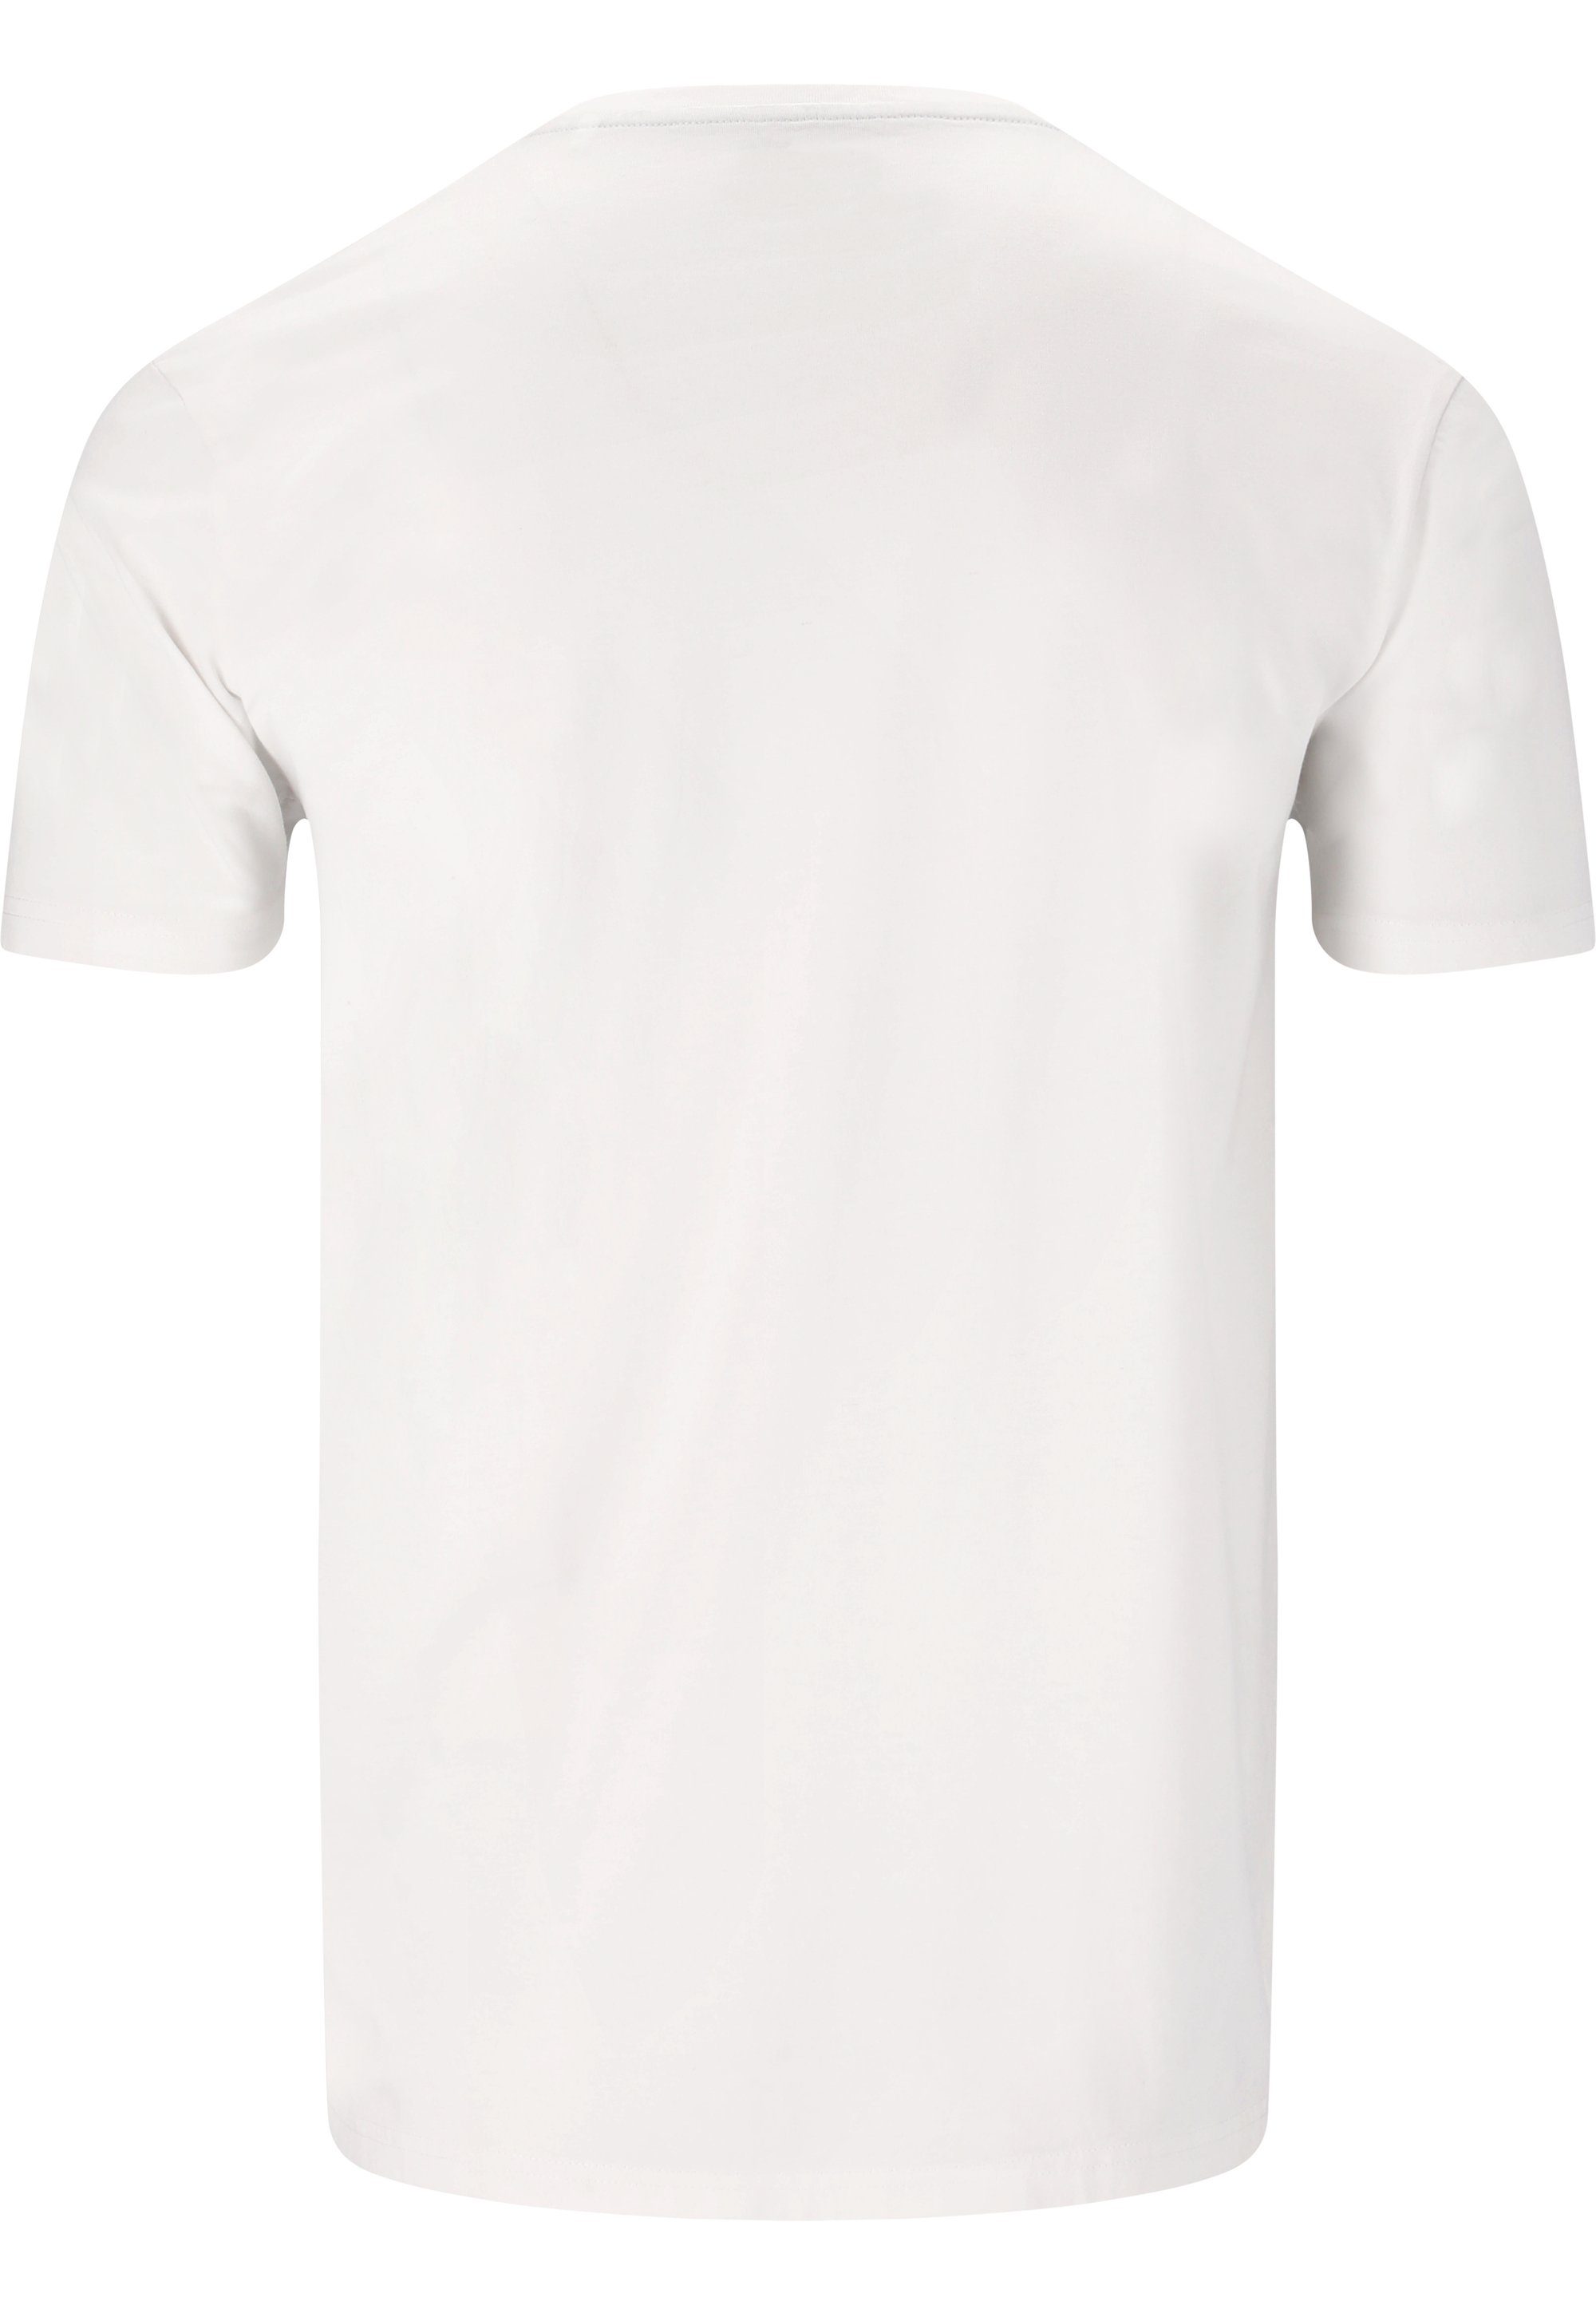 Aufdruck mit weiß T-Shirt Hitch stylischem WHISTLER